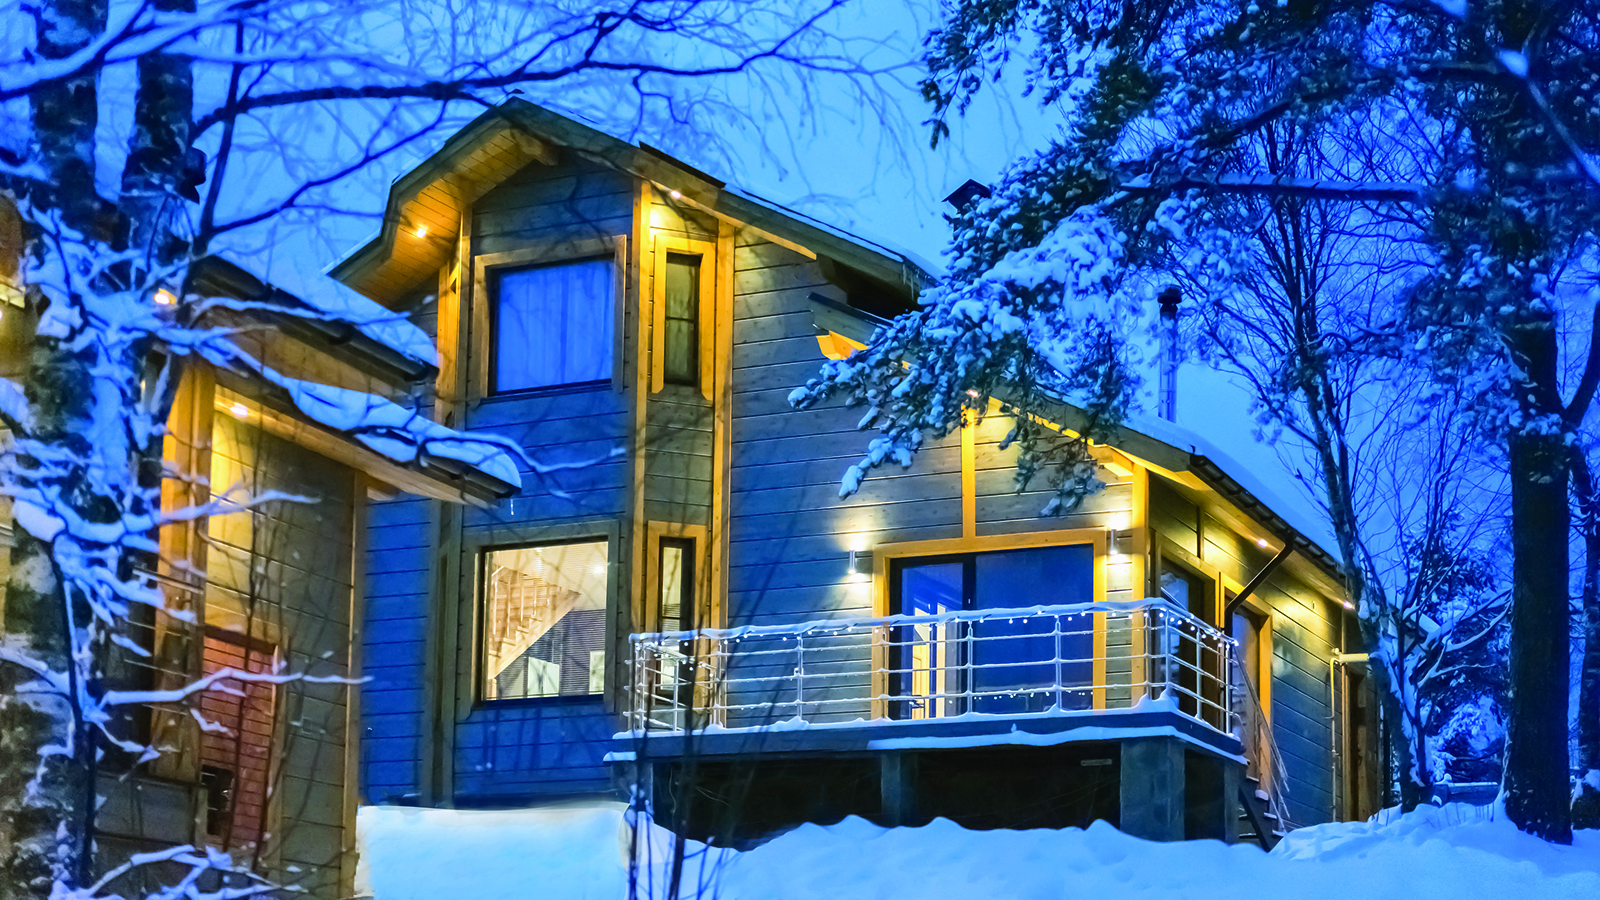 Comment maximiser l’attrait de votre maison en hiver?